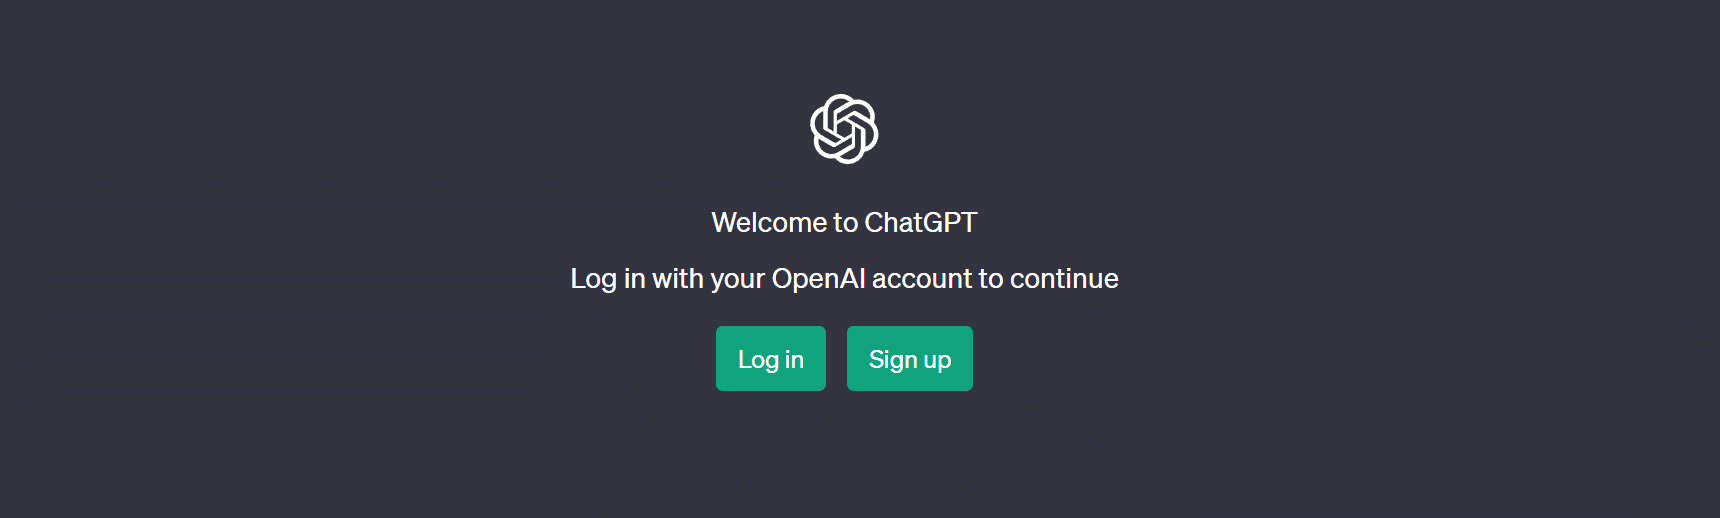 Икона, представляваща снимка на екрана / изображение за влизане в ChatGPT